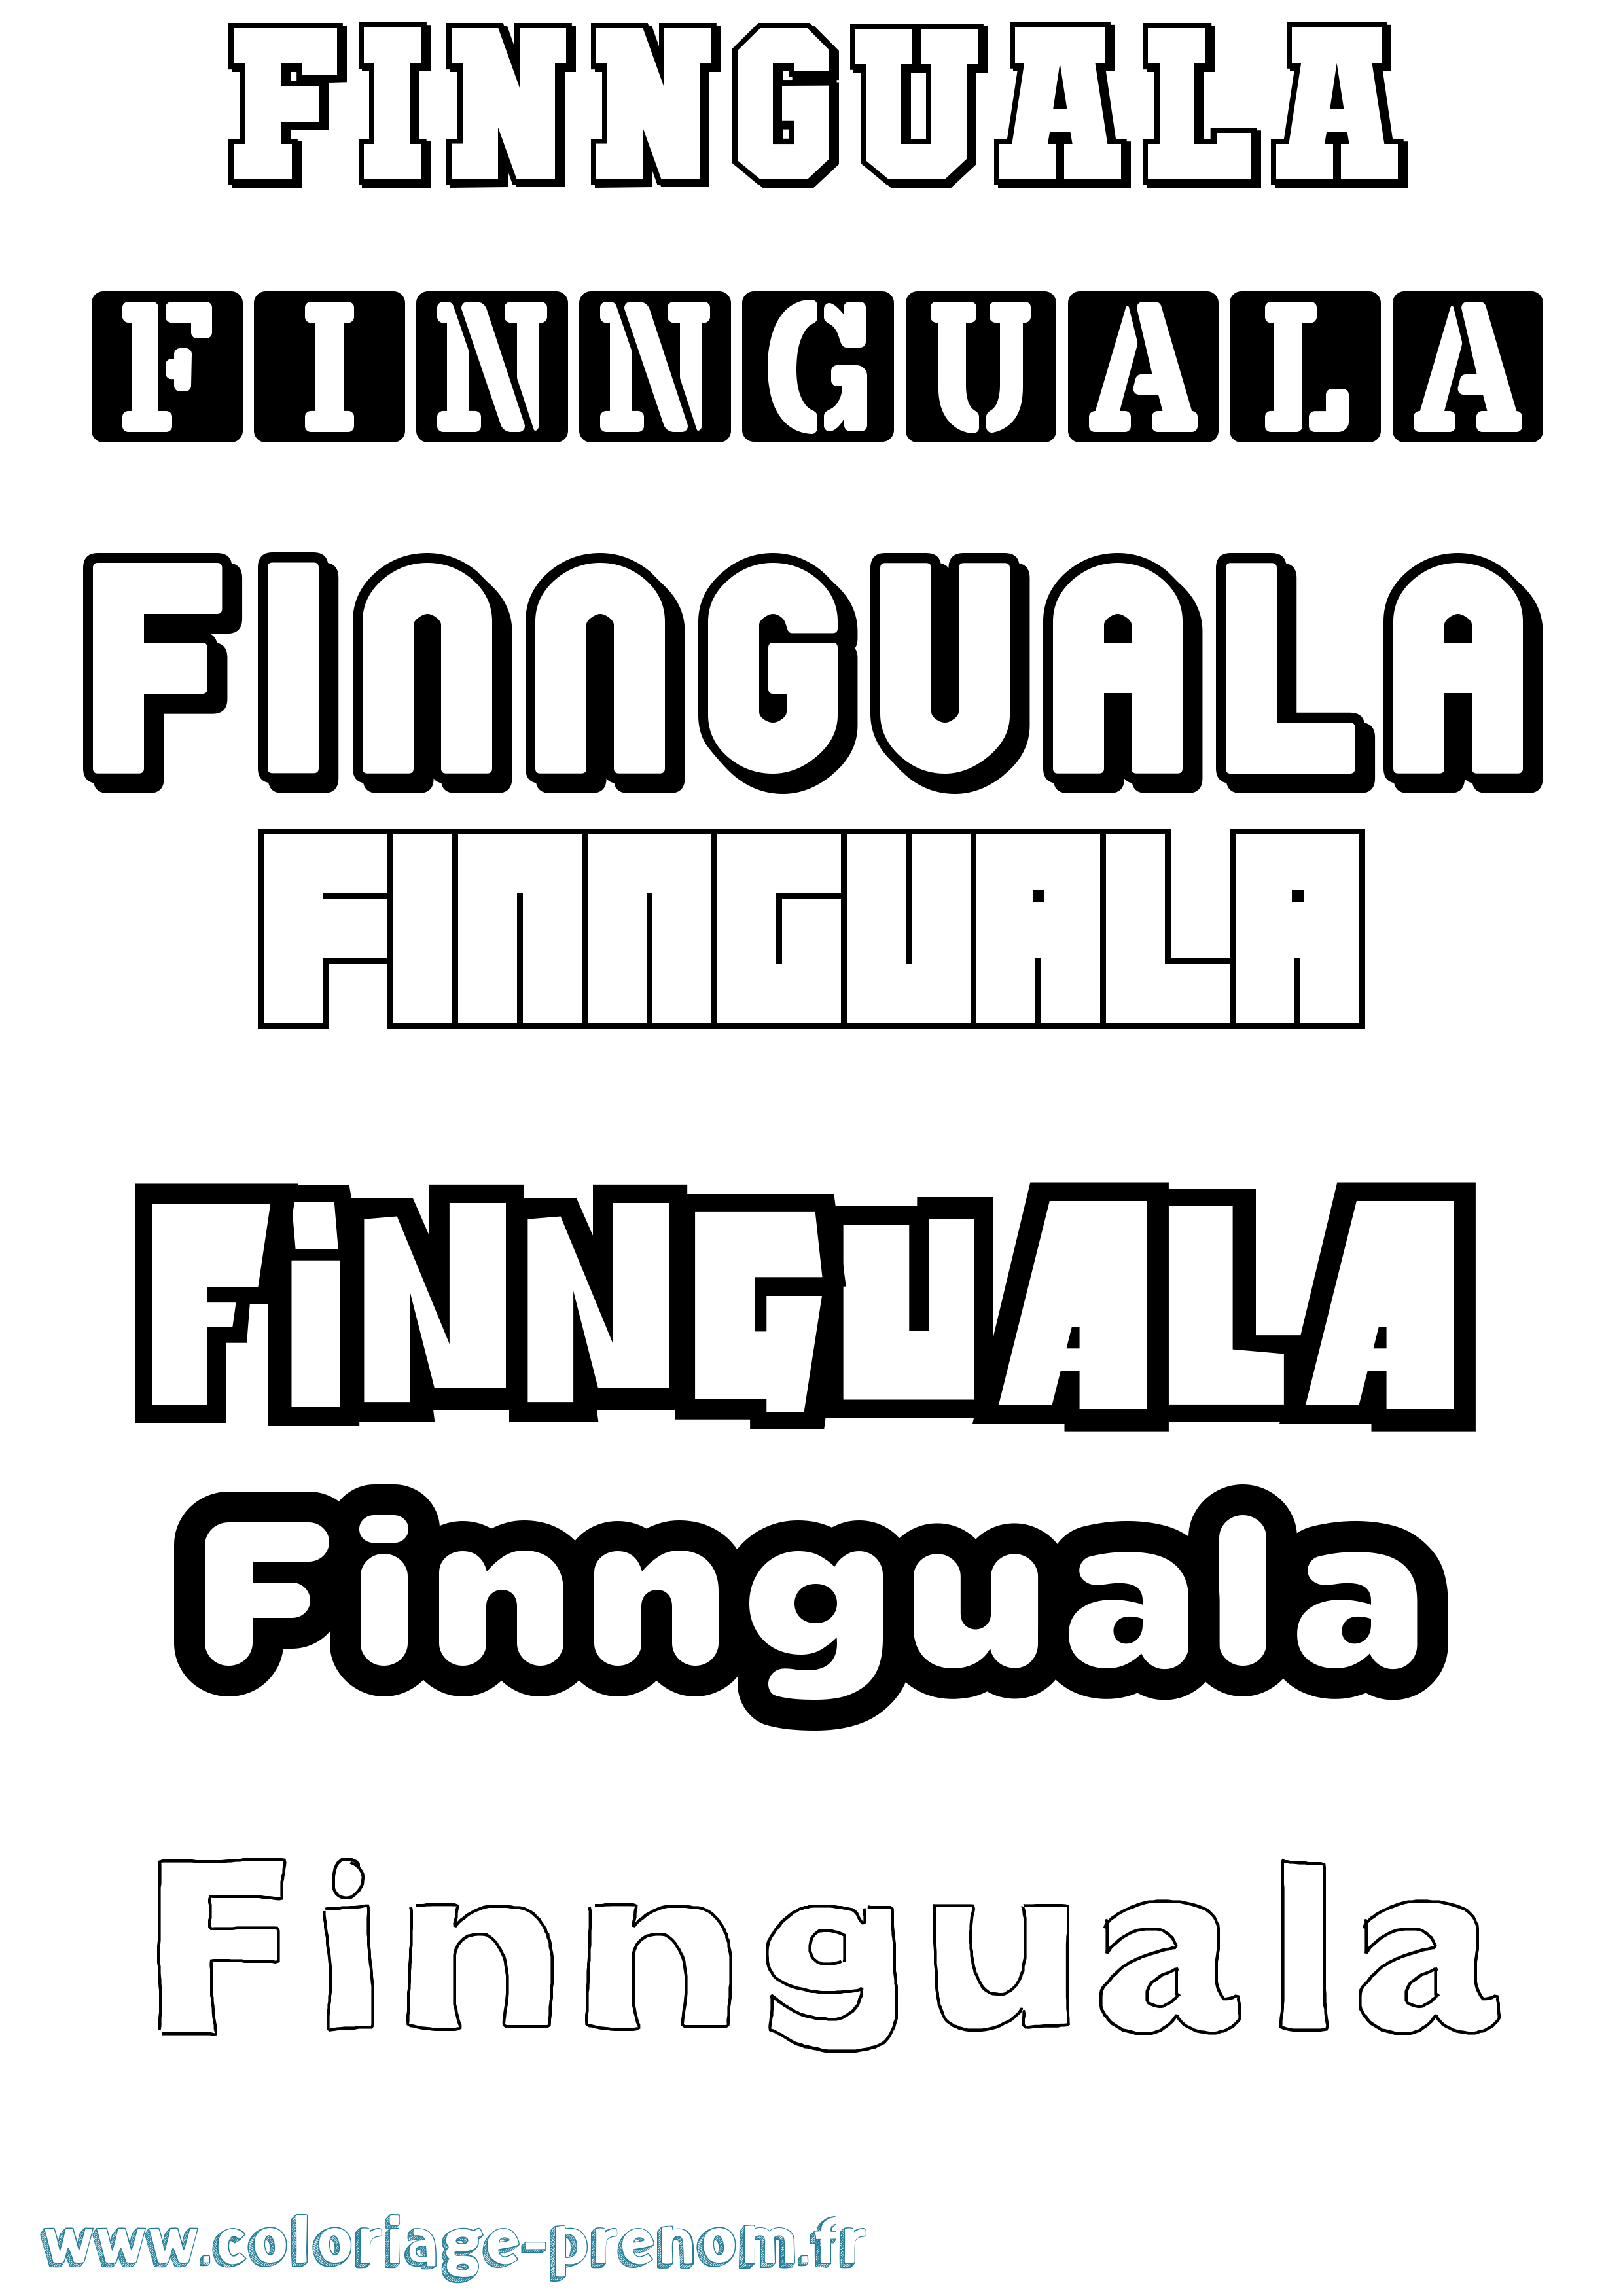 Coloriage prénom Finnguala Simple